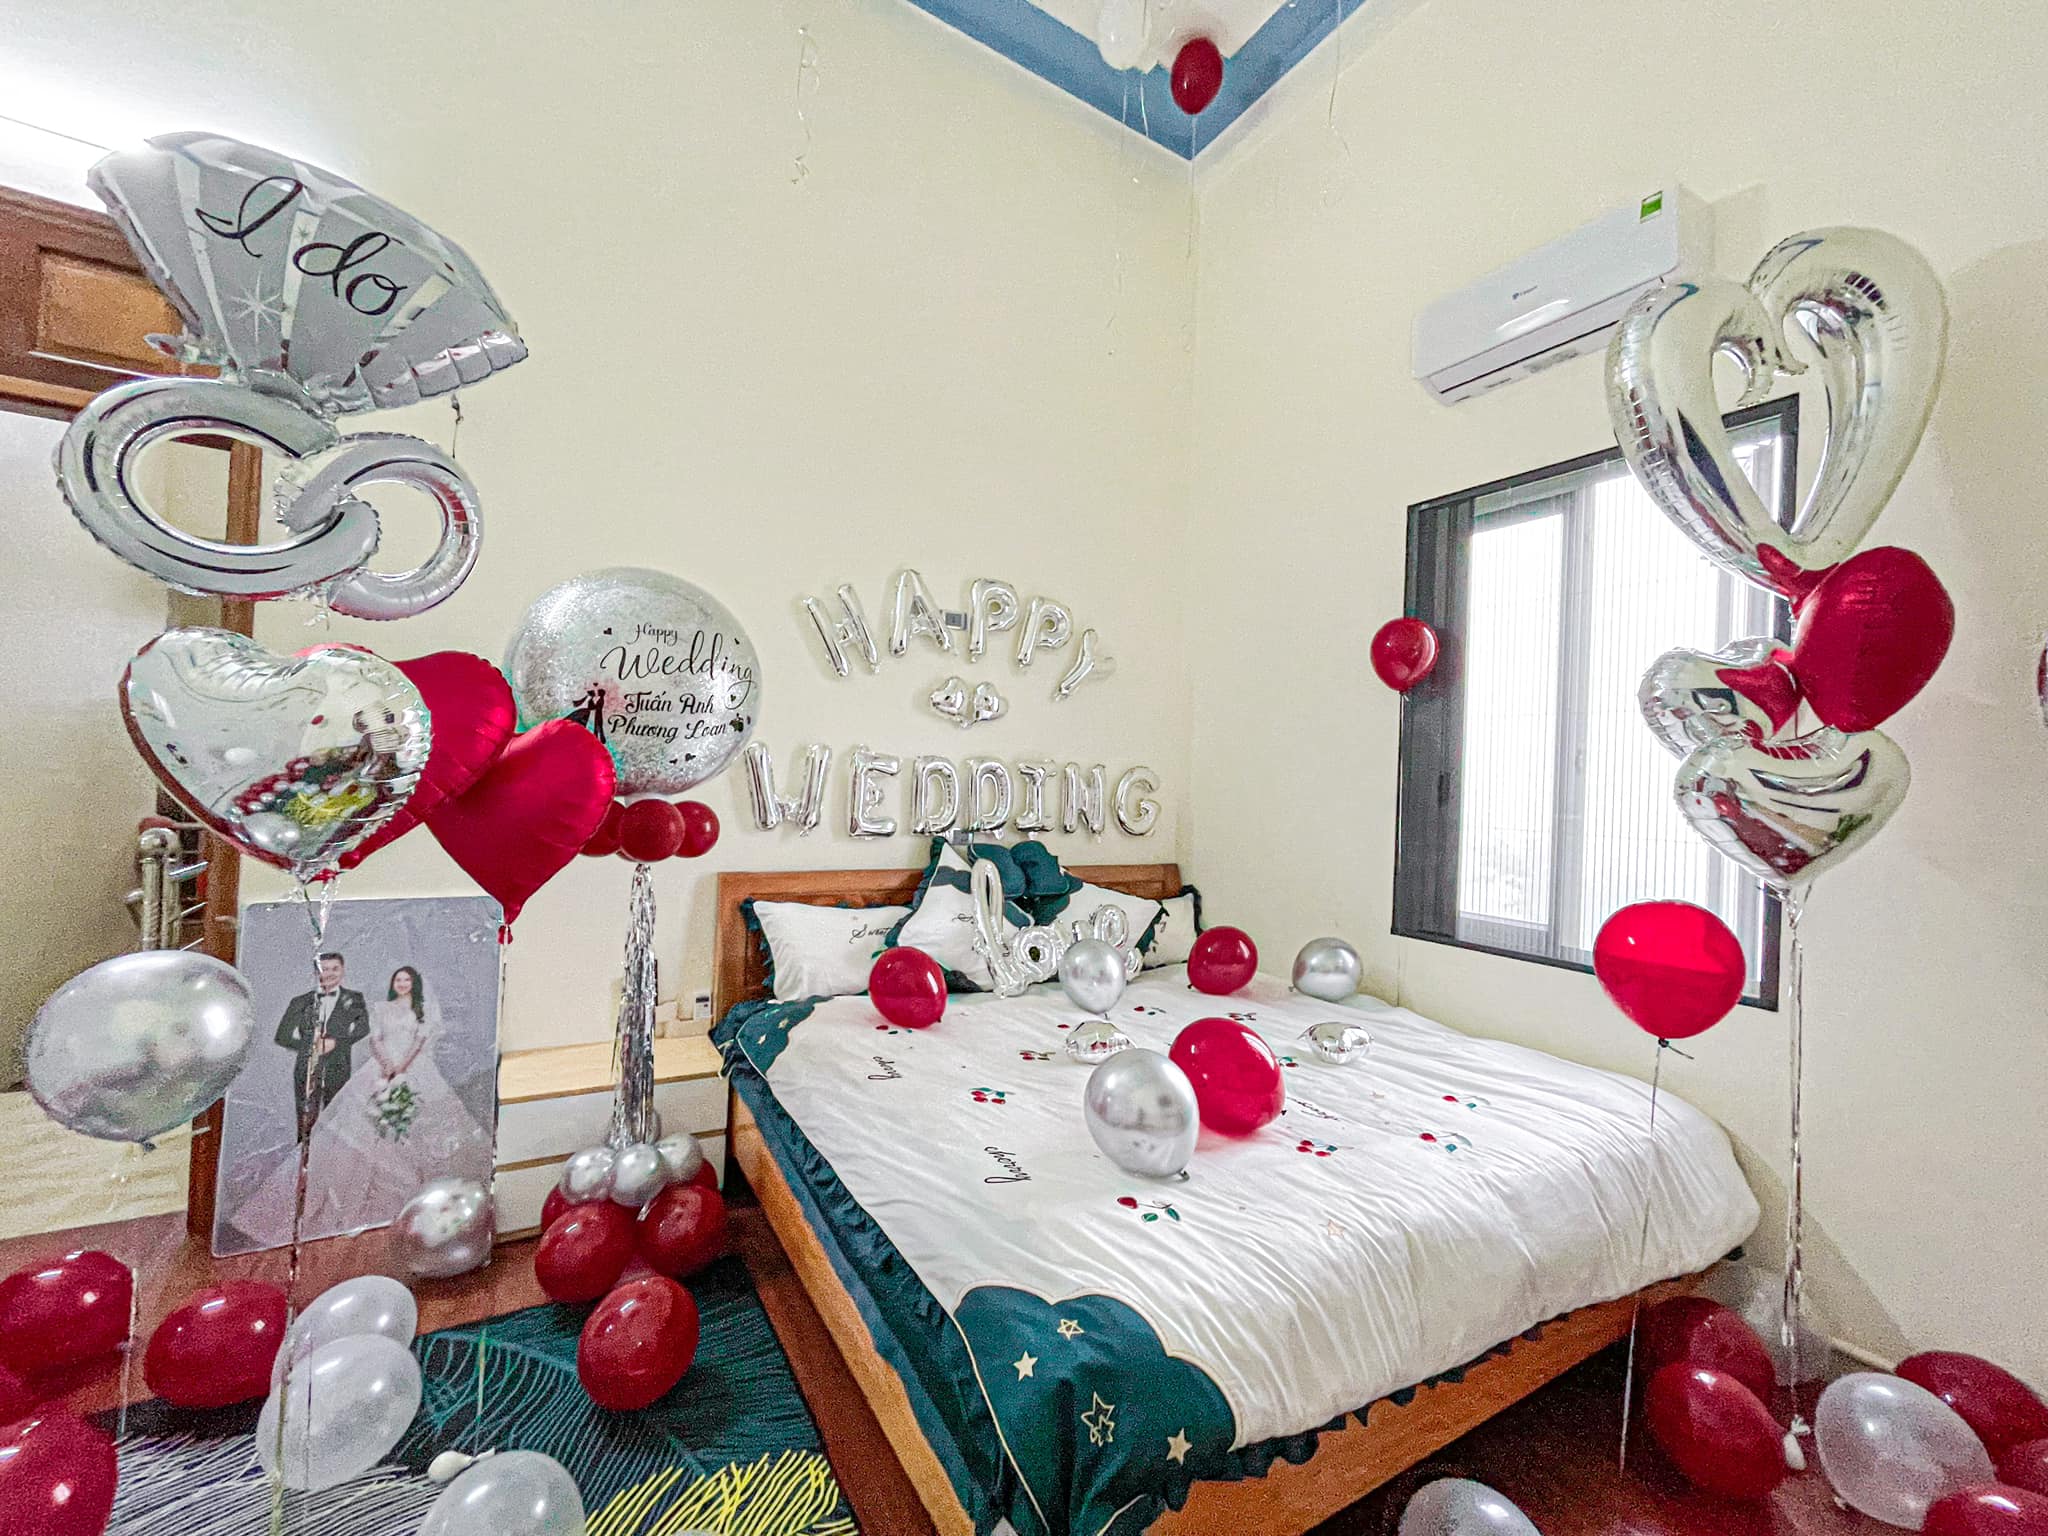 Trang trí phòng cưới chuyên nghiệp và uy tín tại Hà Nội - Chill decor